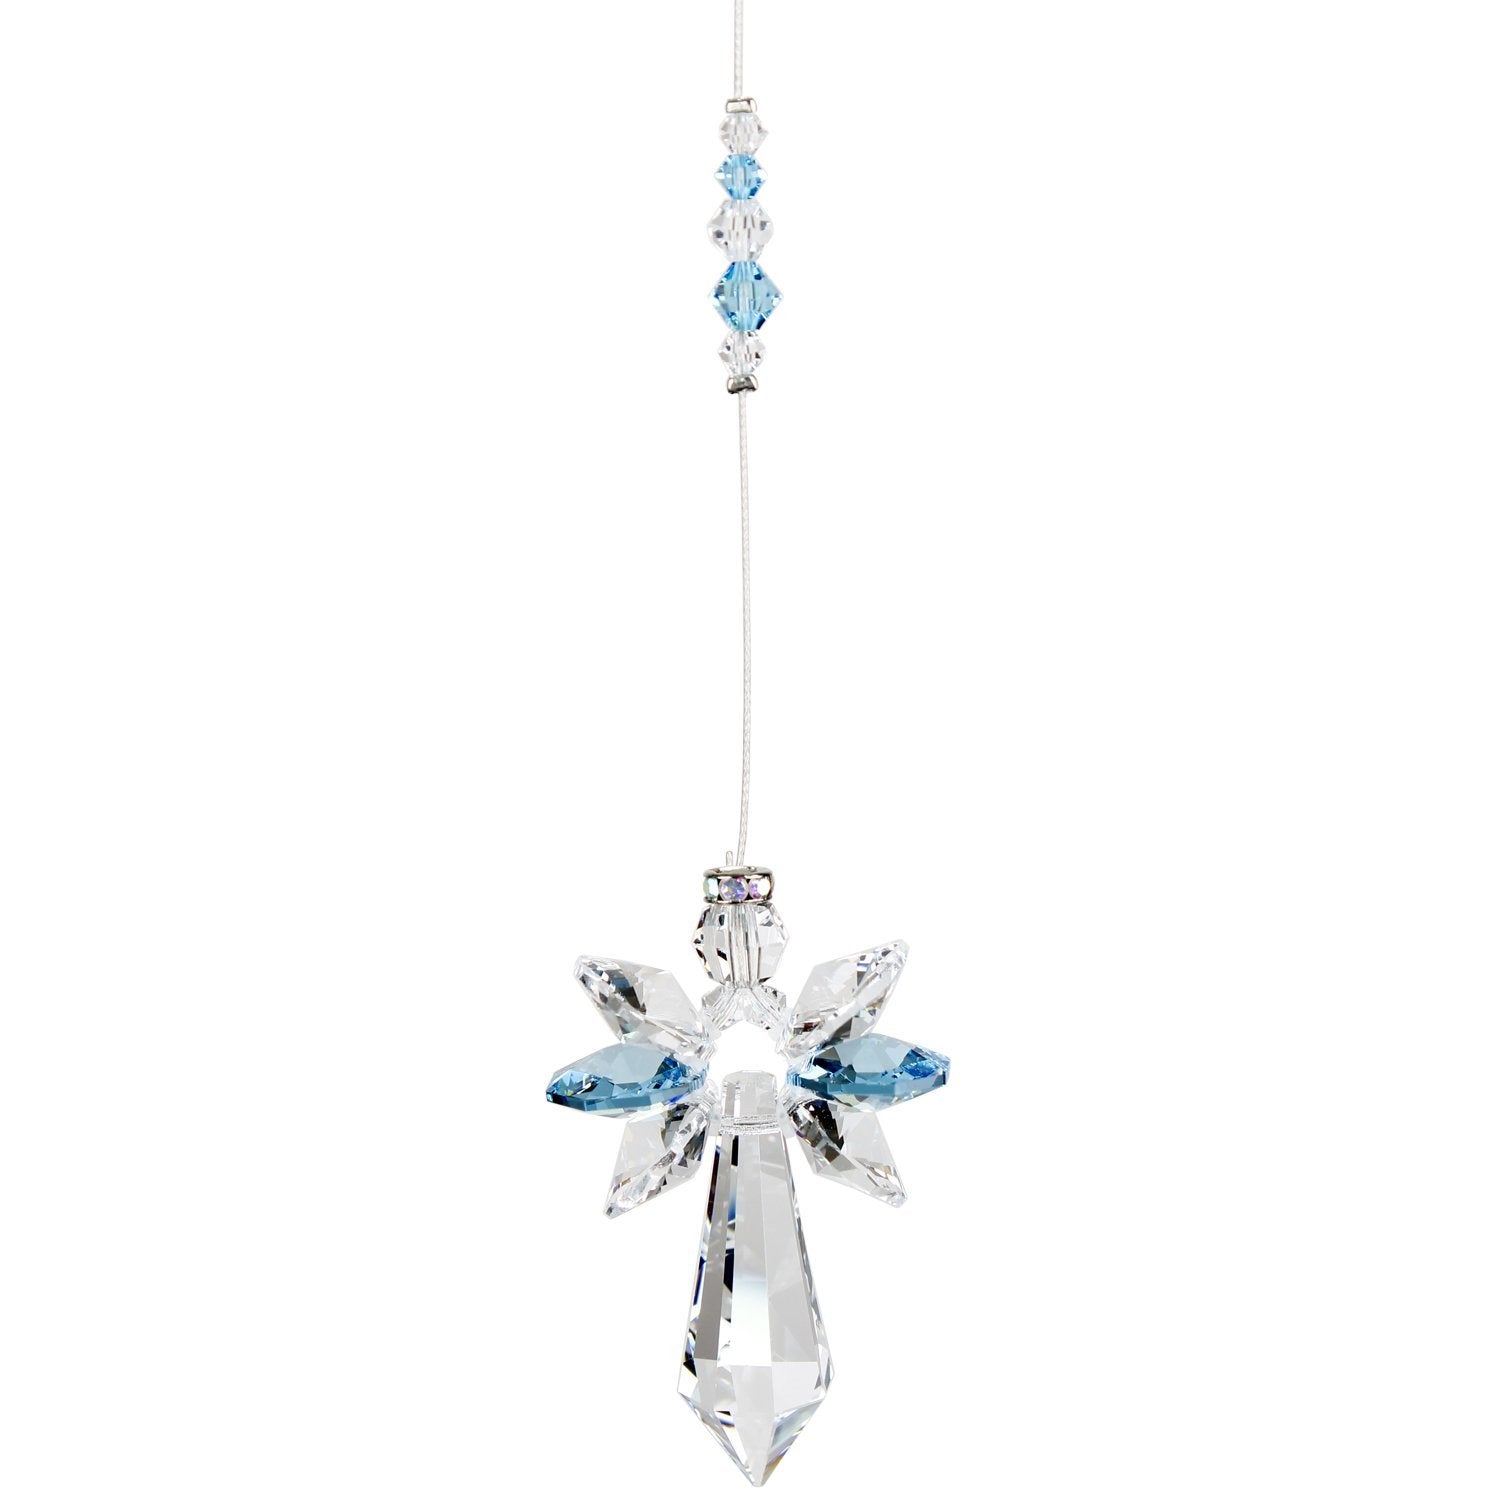 Crystal Guardian Angel Suncatcher - Large, Aquamarine alternate product image